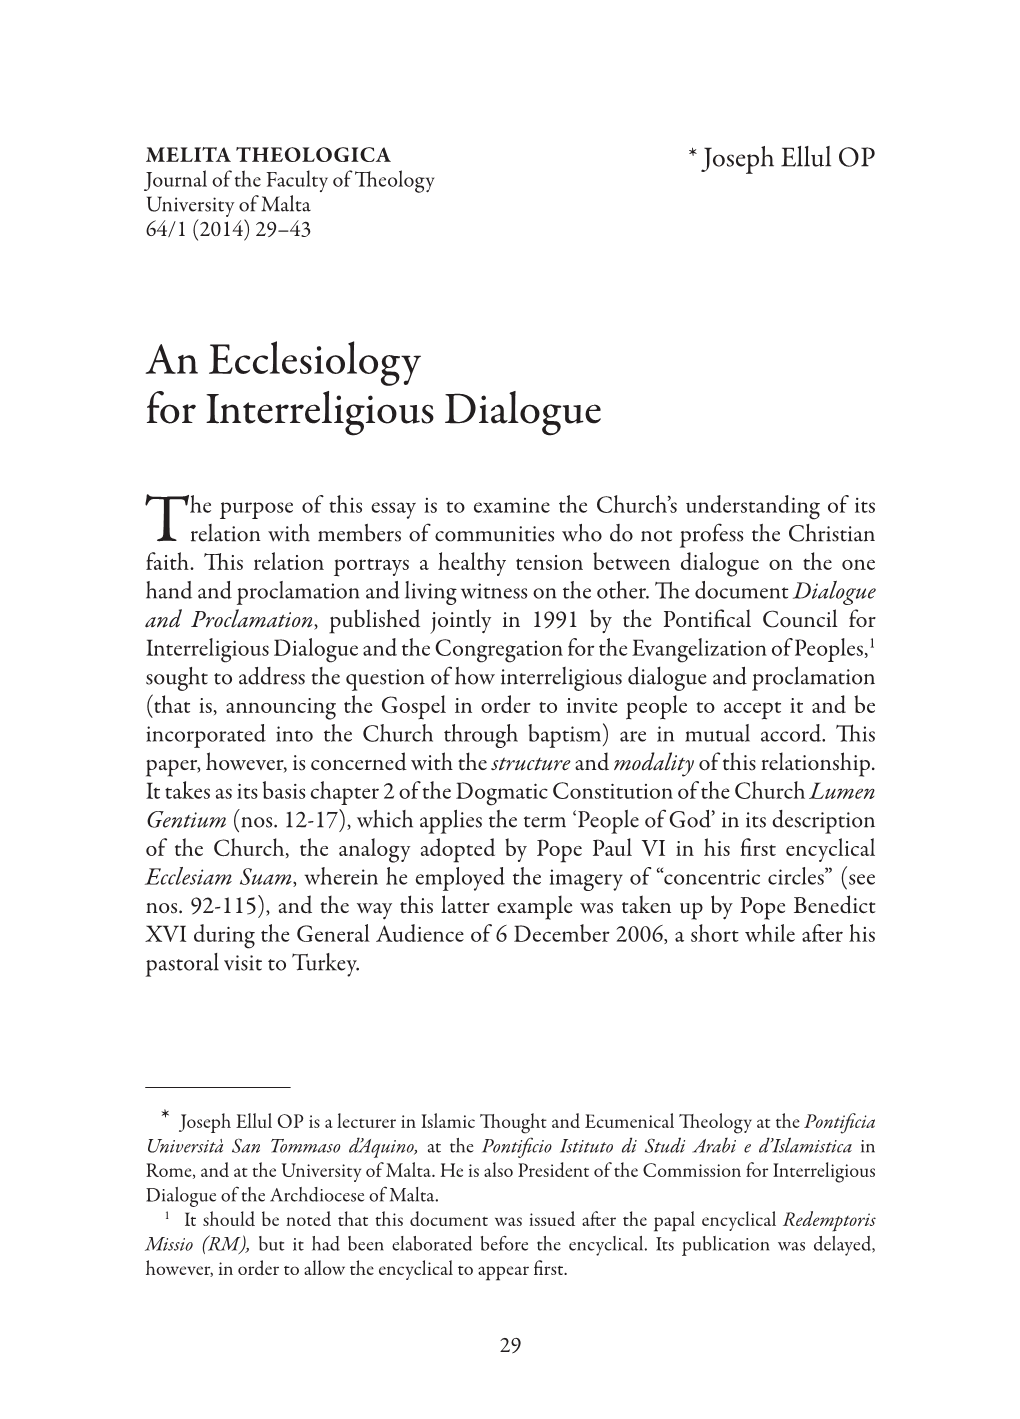 An Ecclesiology for Interreligious Dialogue